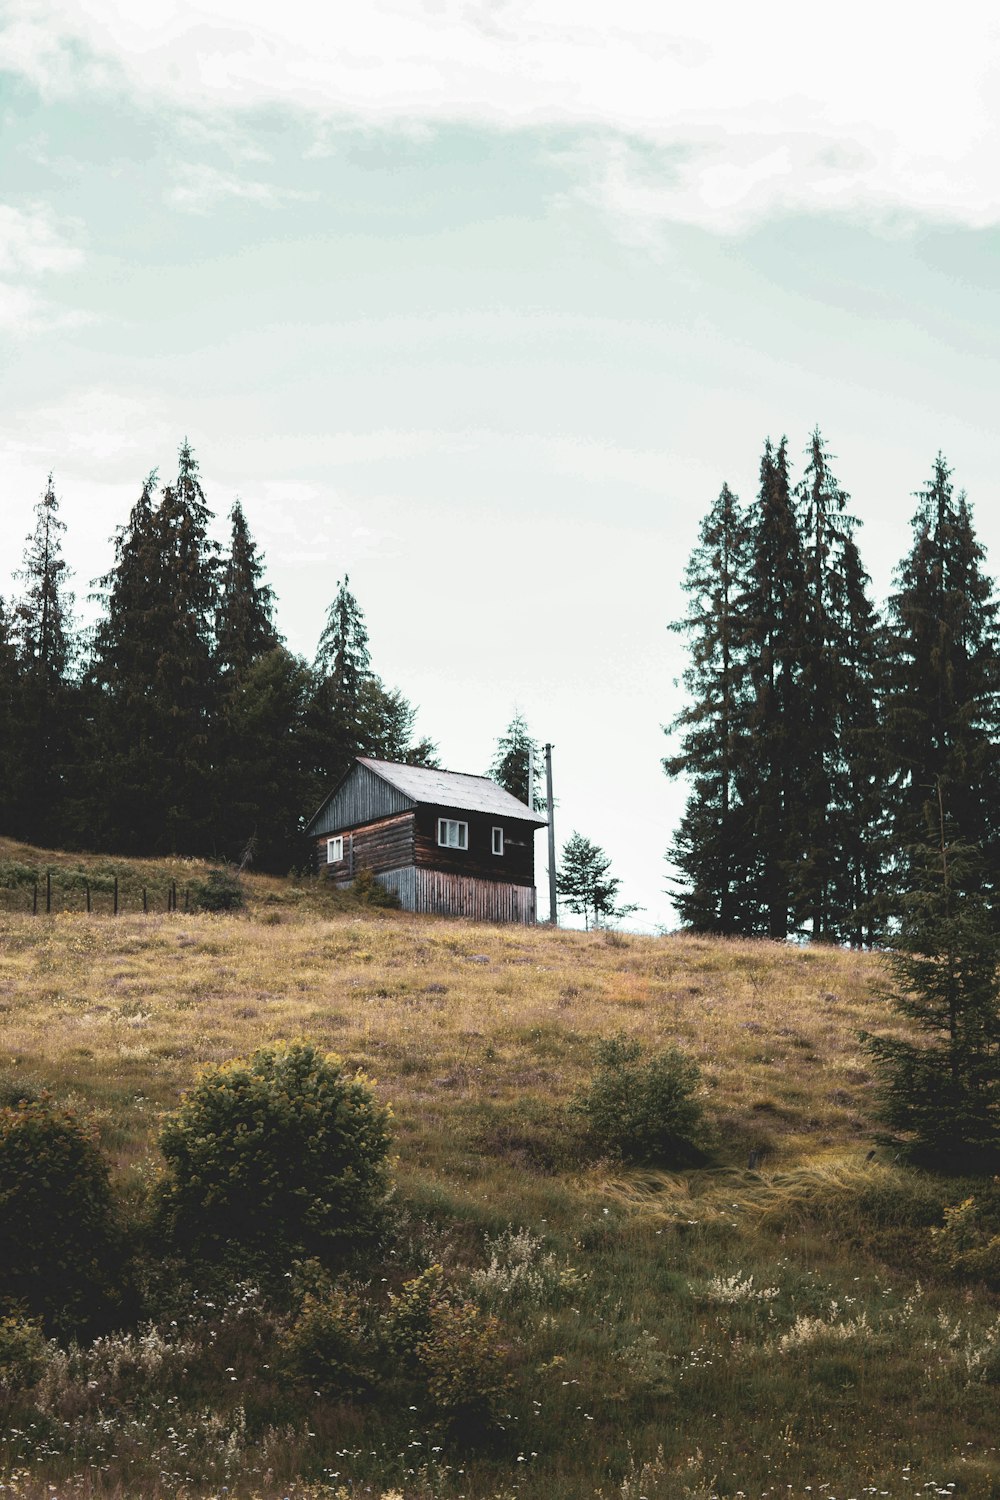 casa di legno marrone vicino agli alberi verdi sotto il cielo bianco durante il giorno